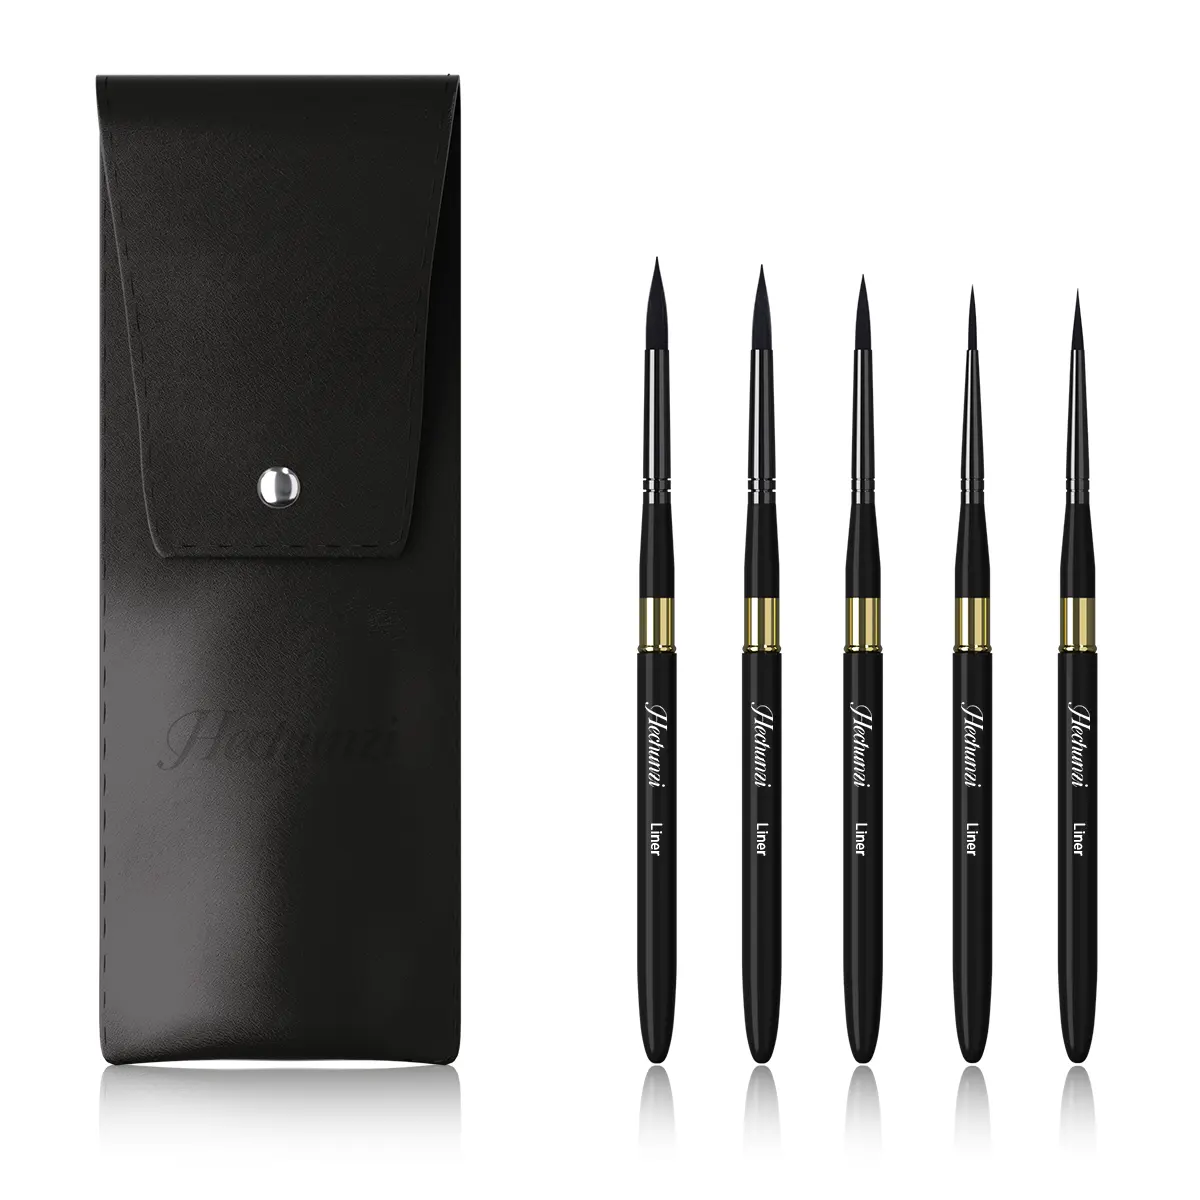 Yüksek kalite 5 adet siyah naylon saç seyahat sanatçı fırçalar Mini detay boya fırça setleri yüz boyama fırçalar